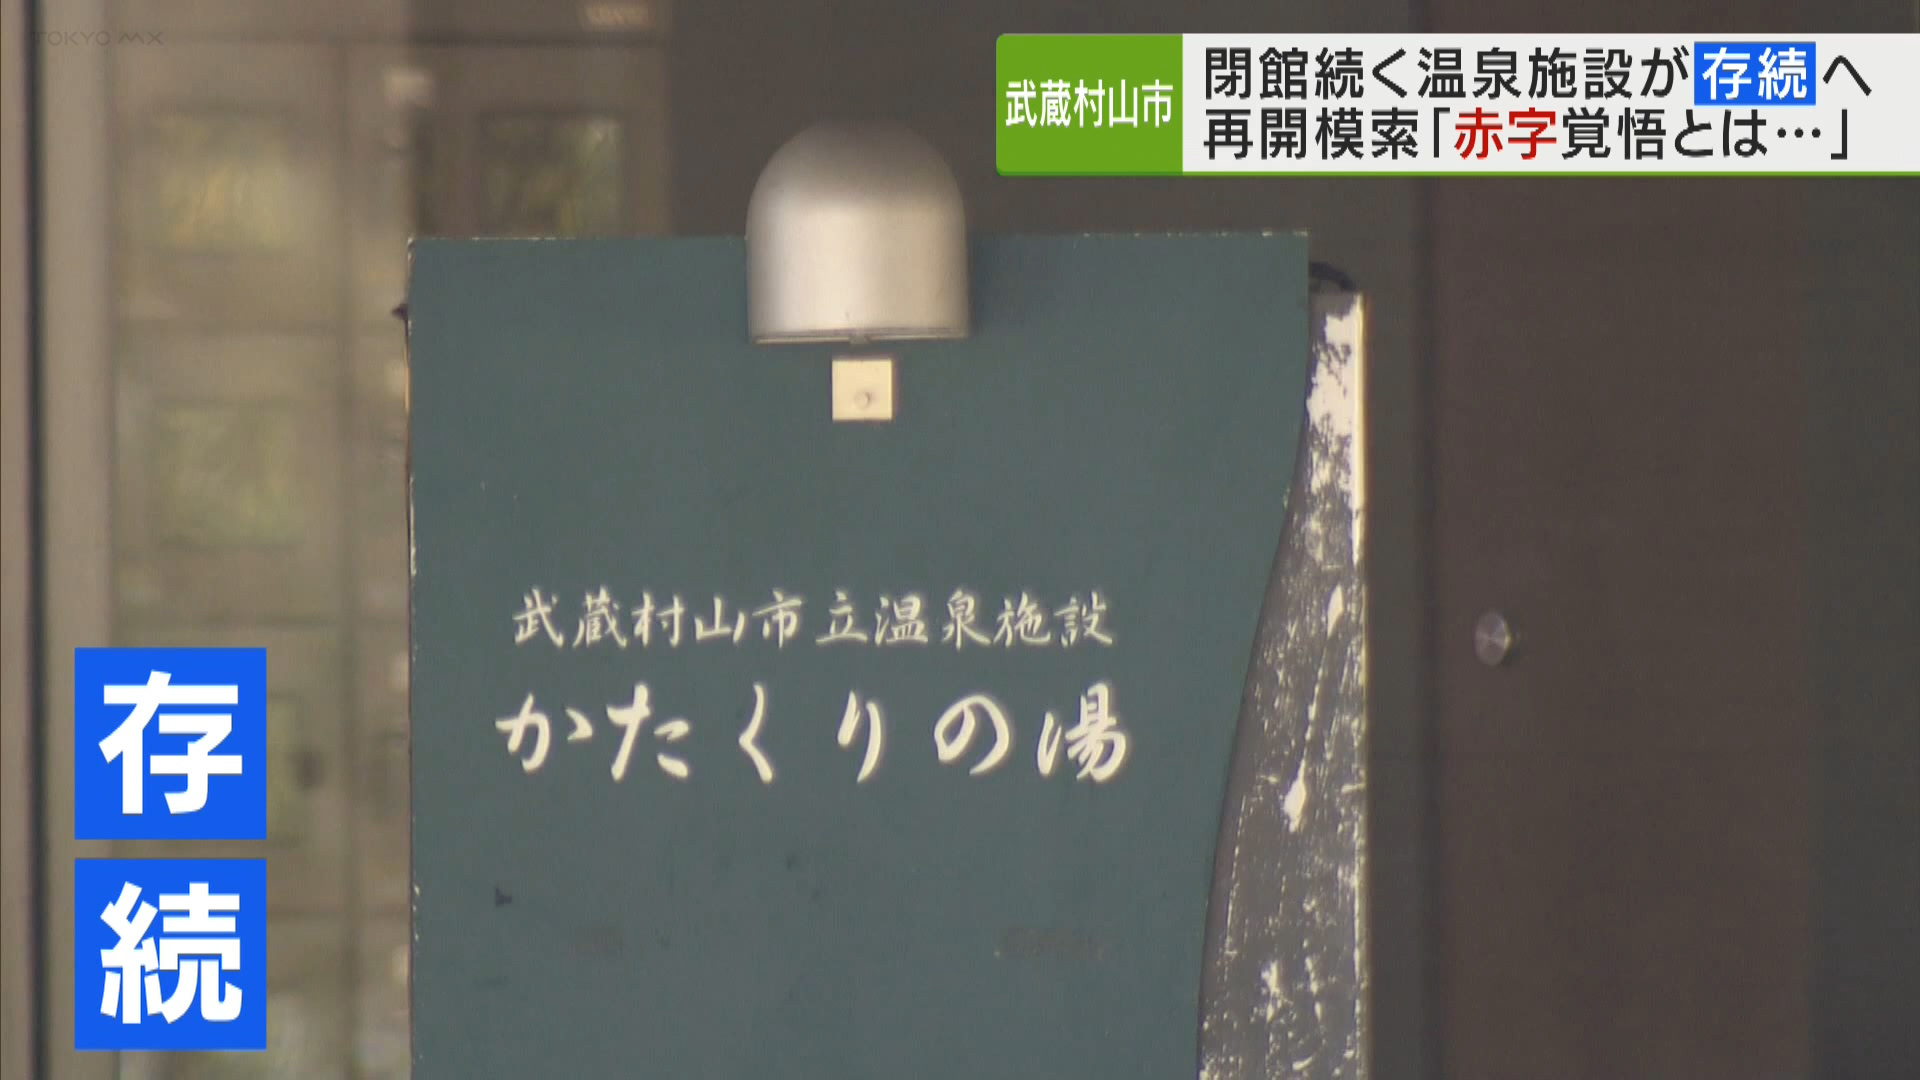 武蔵村山市は、去年4月から閉館が続いていた温泉施設を存続させる方針を示しました。山﨑市長は「赤字覚悟とはいかない」として、多角的に施設の運営方法を模索していく考えです。